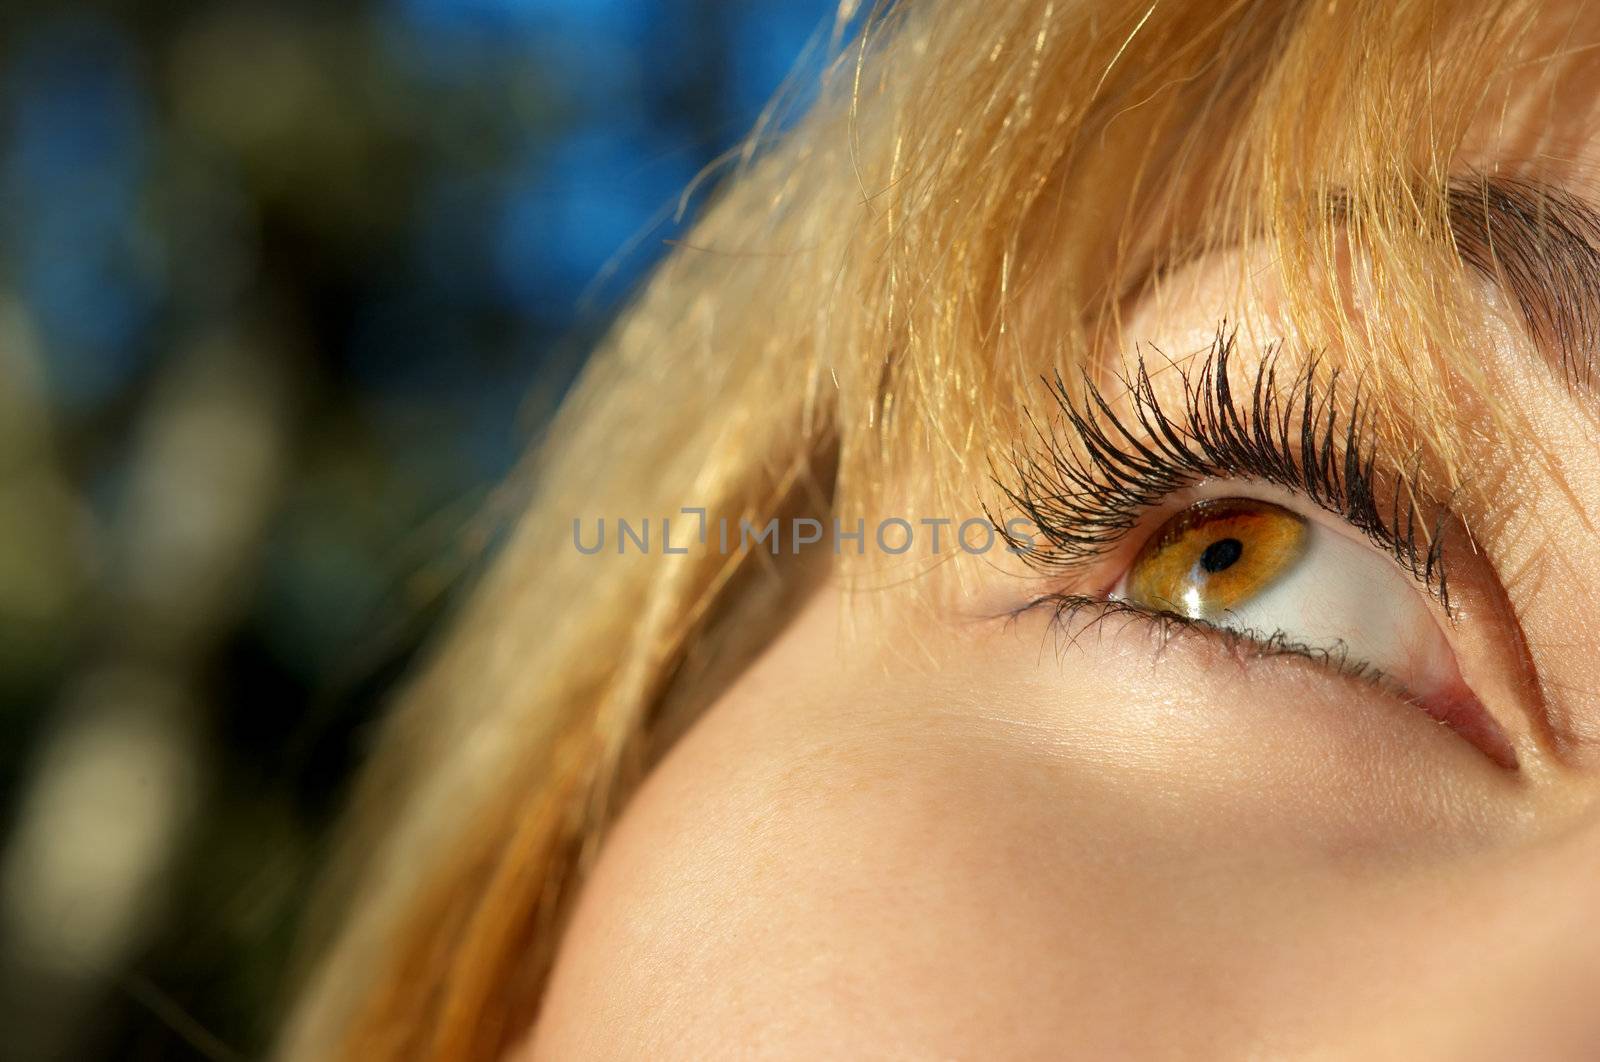 beautiful blond girl's eye closeup. selective focus.